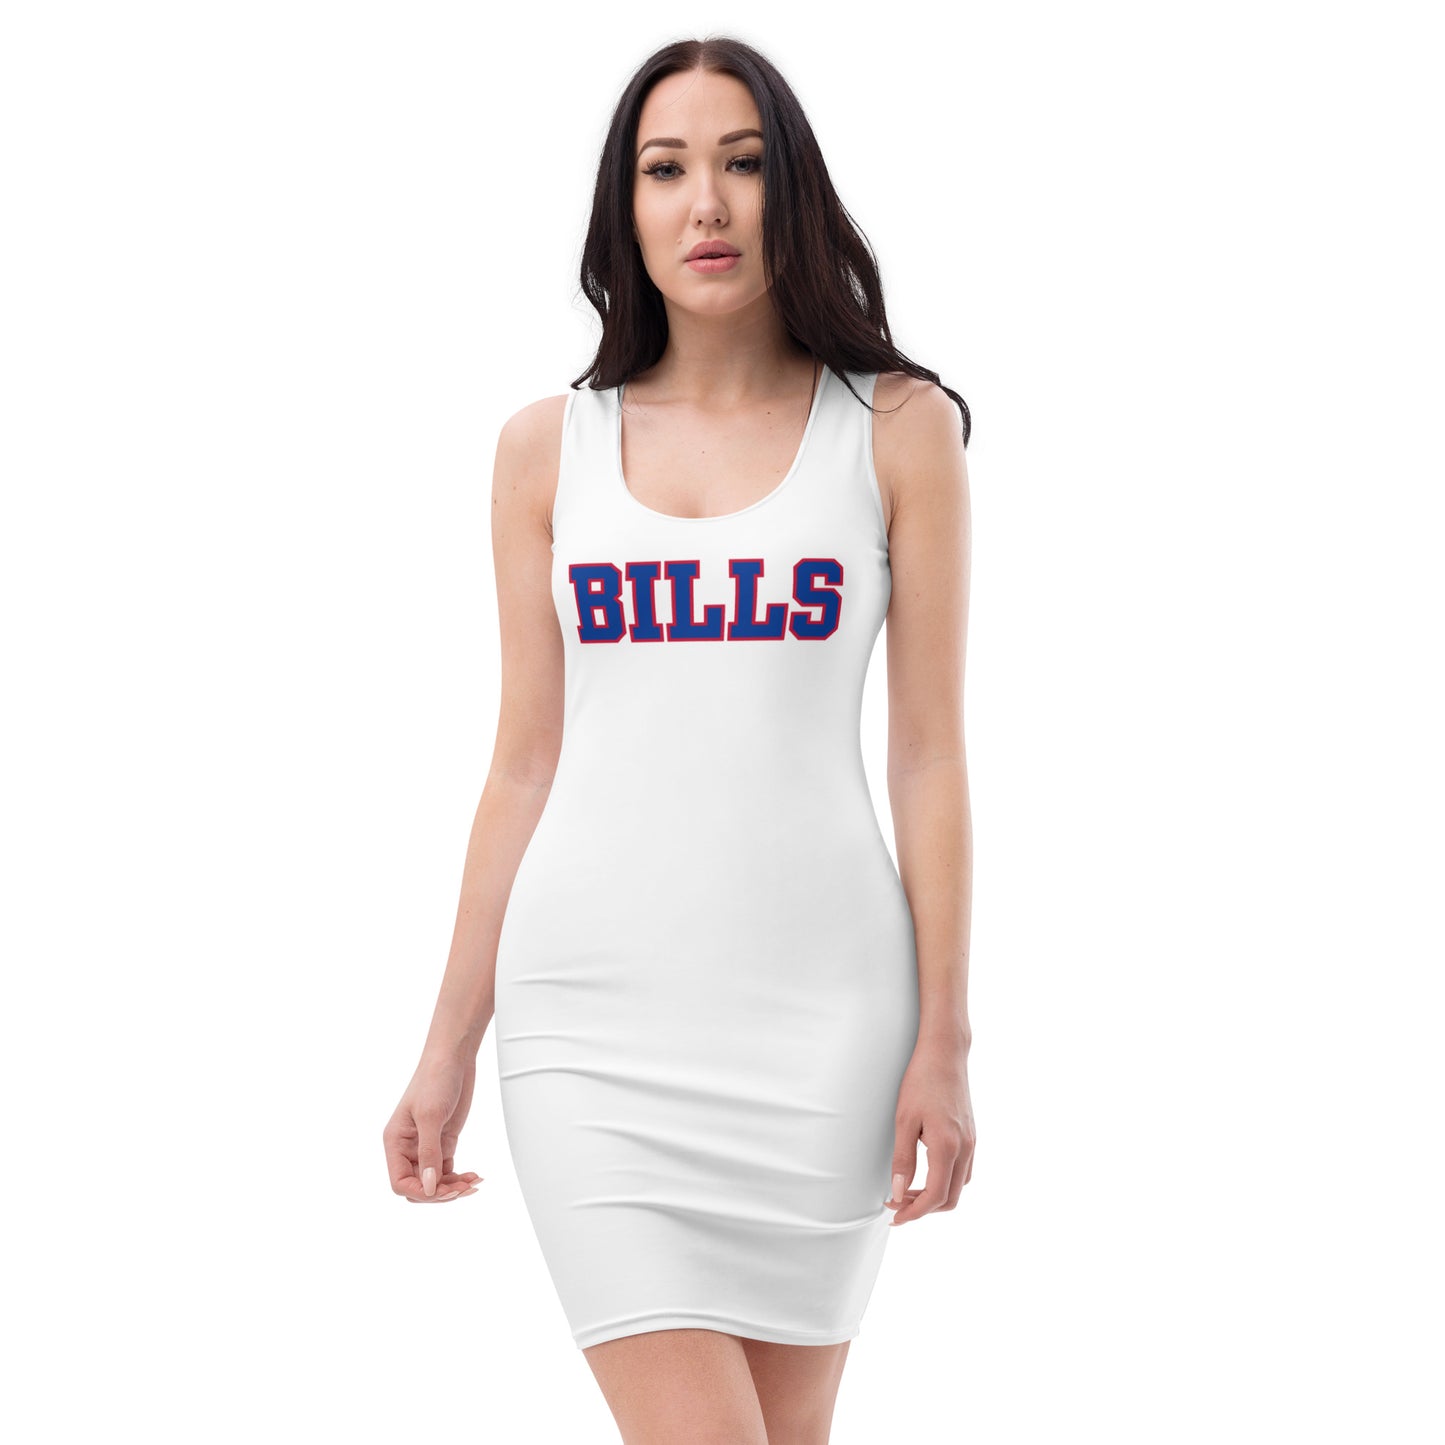 Bills Dress